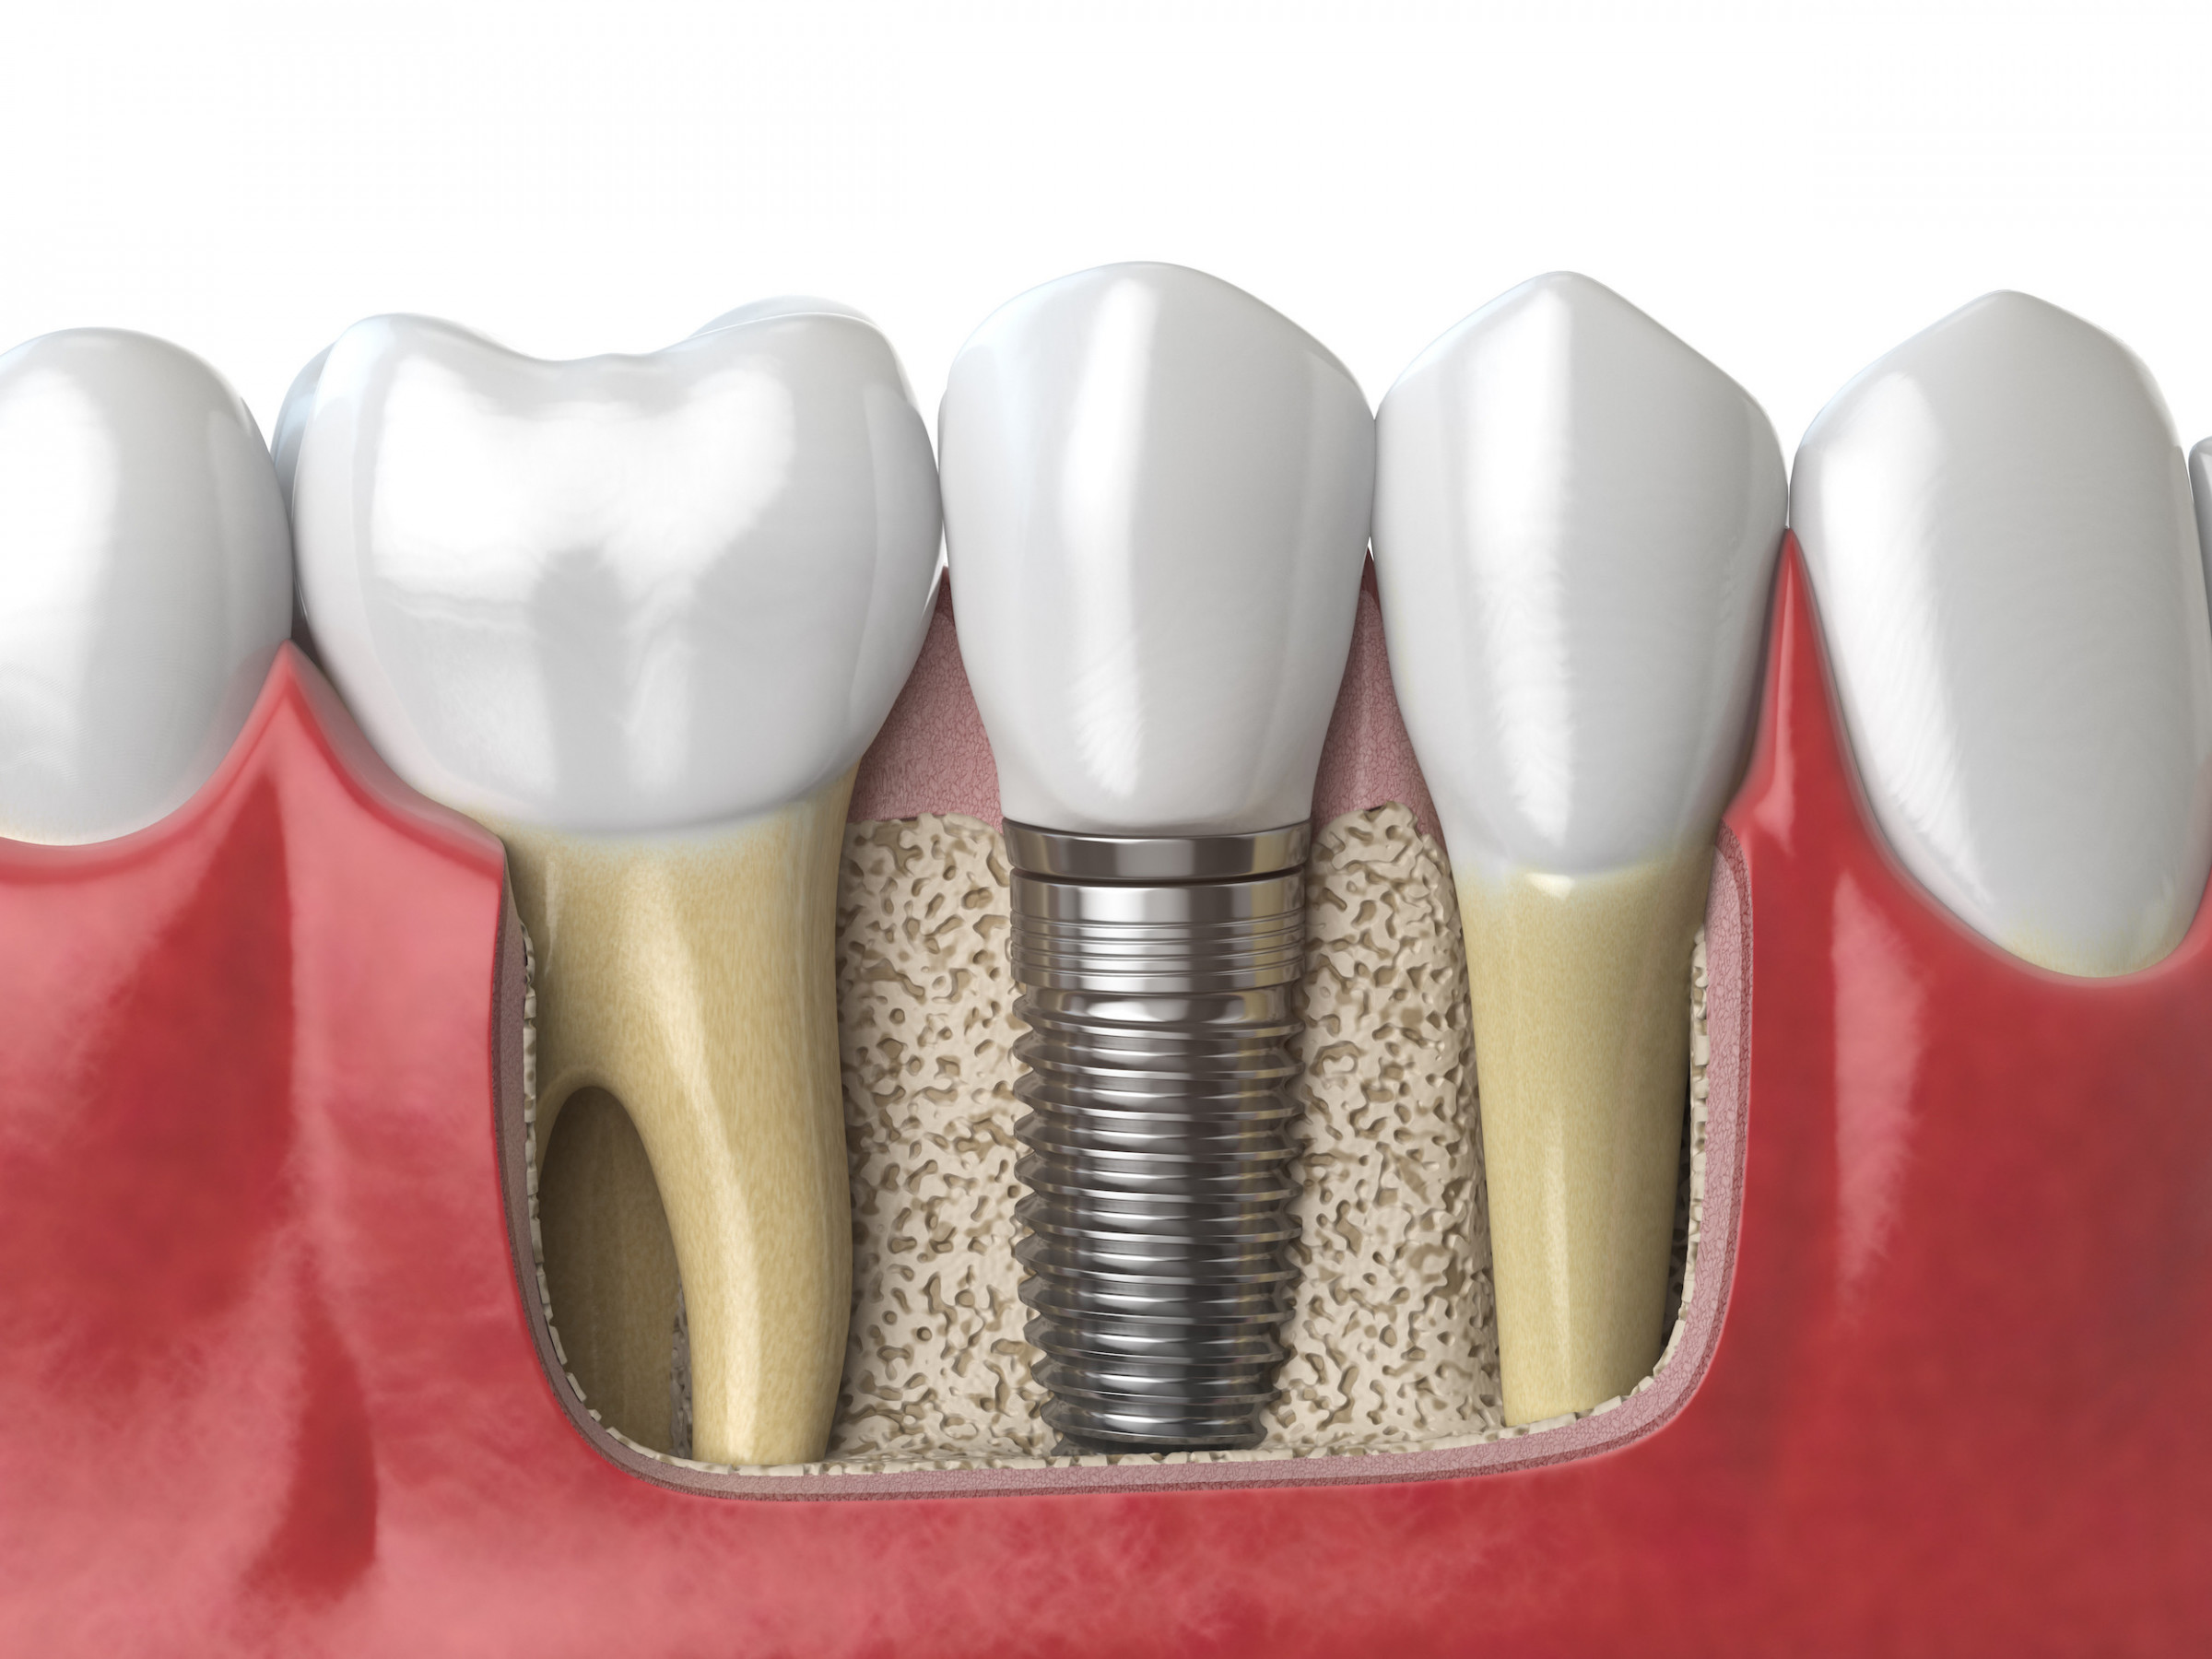 インプラント治療： 歯を失った部分に歯を入れたい　入れ歯ではなく天然歯のような歯にしたい　失った歯の隣の歯を削りたくない　などお困りのことがあればご相談ください。